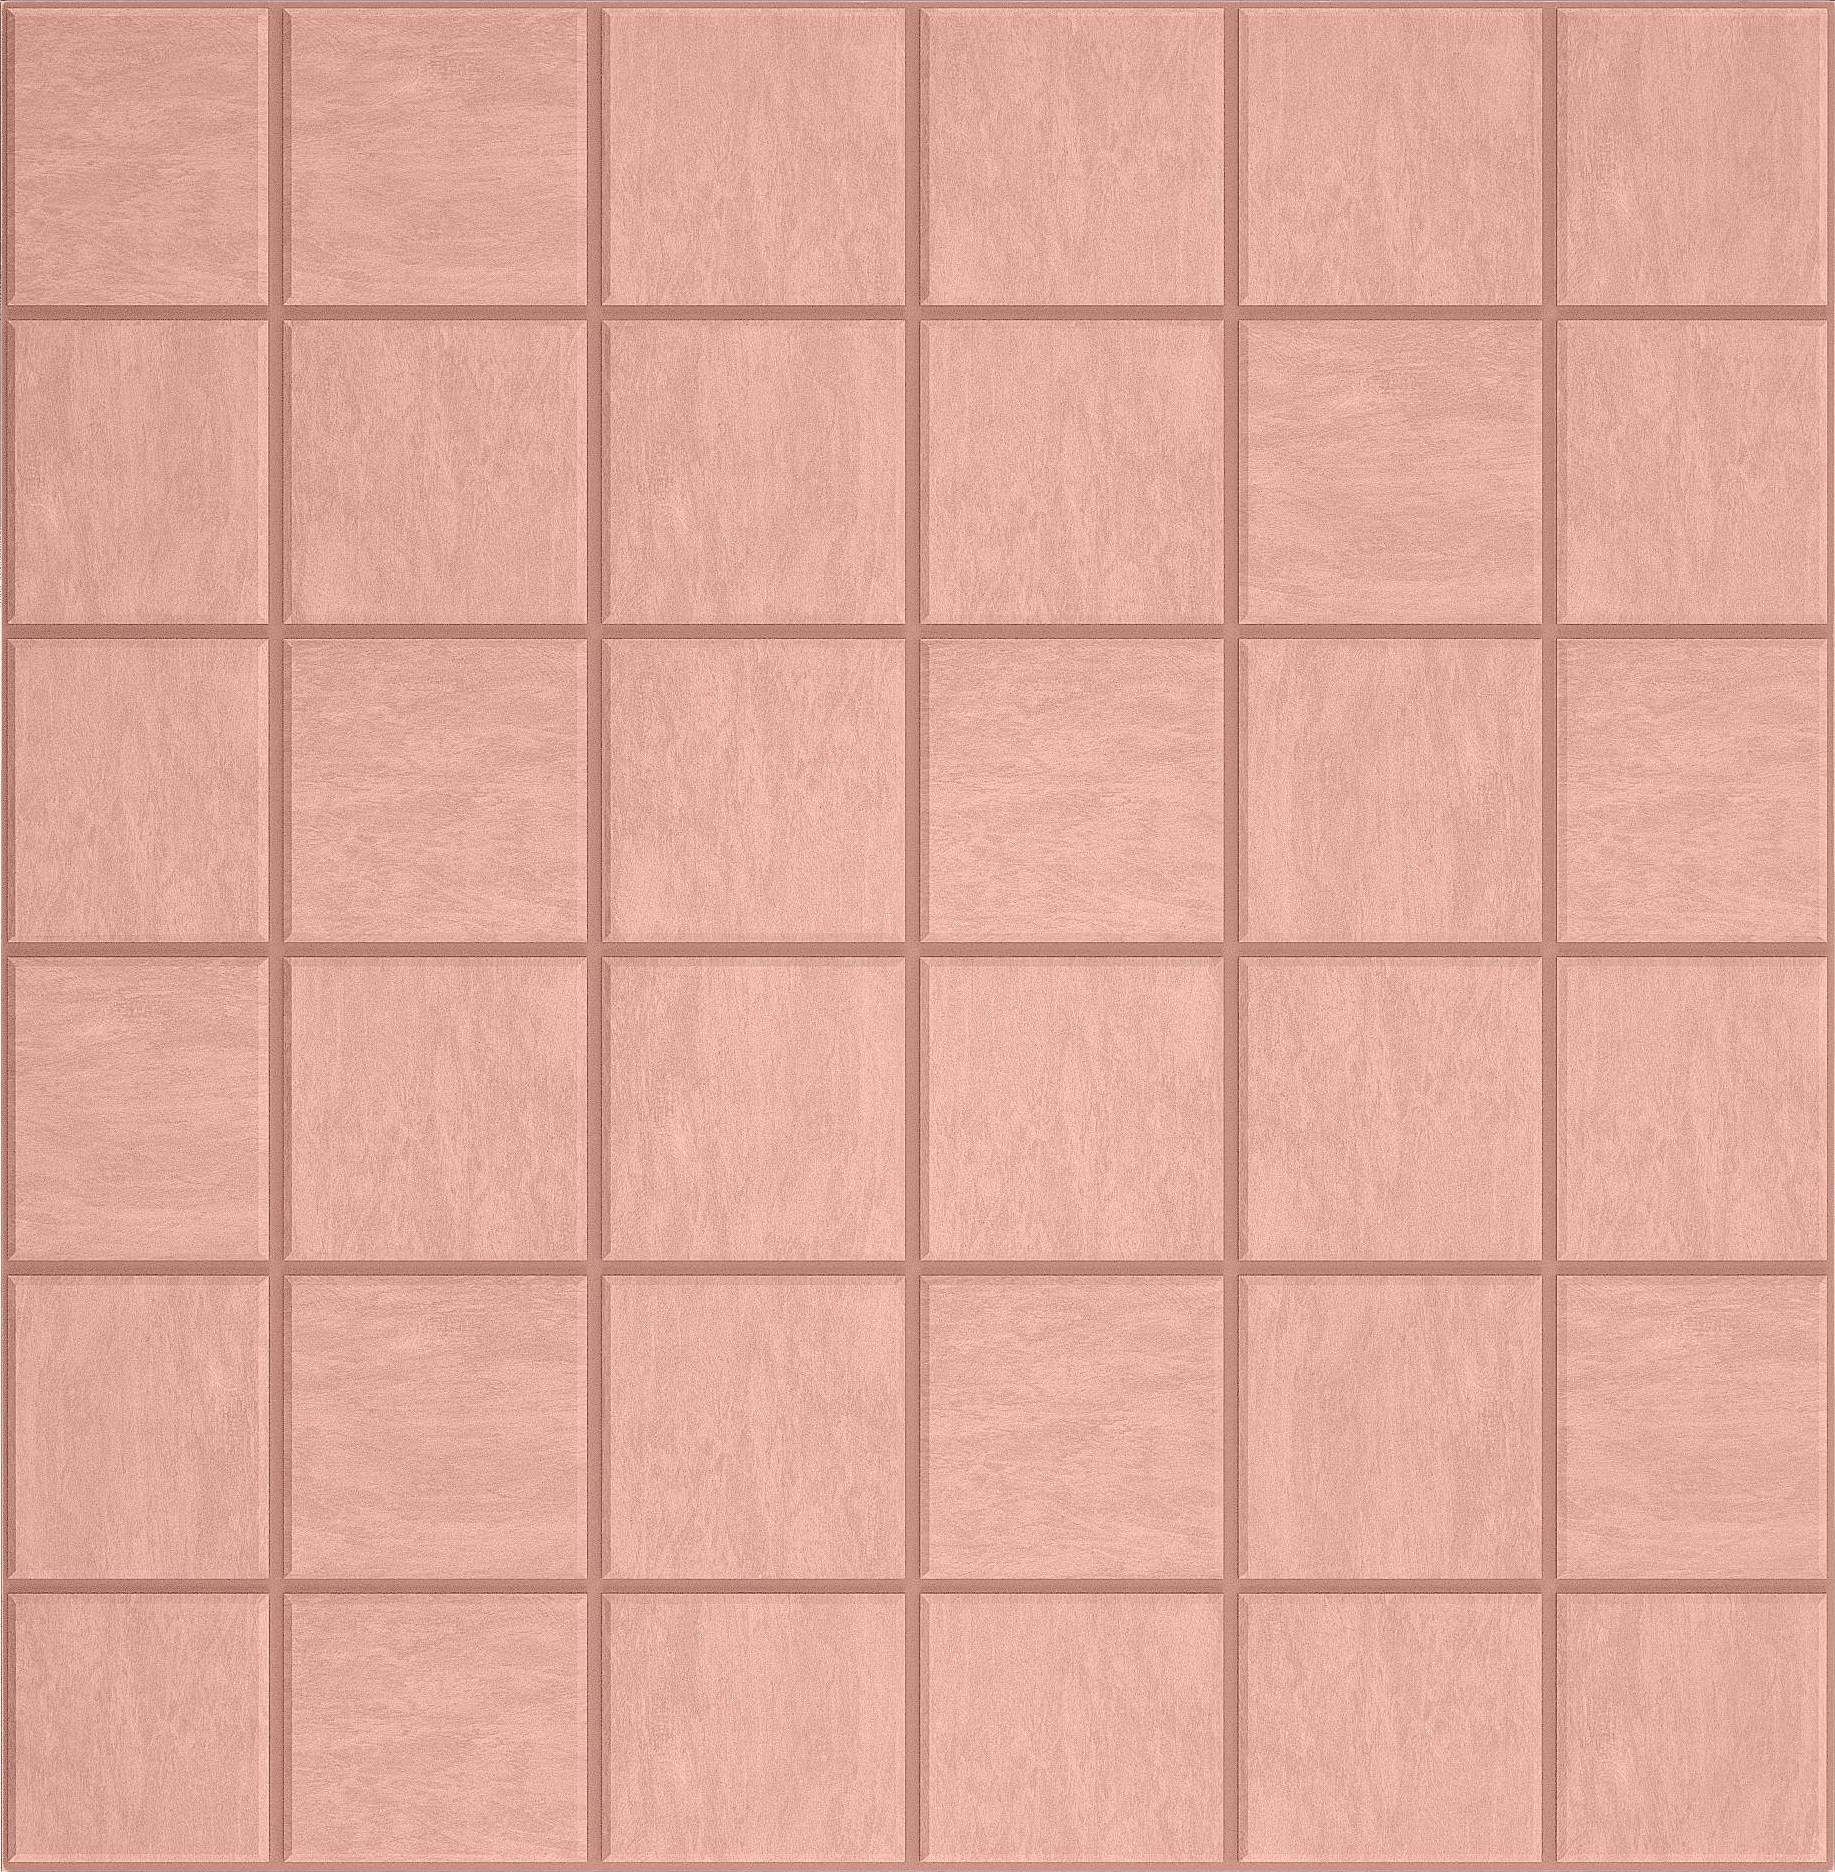 Мозаика Ametis Spectrum Salmon SR05 (5x5) Непол. 30x30 мозаика ametis spectrum chocolate sr07 cube непол 29x25